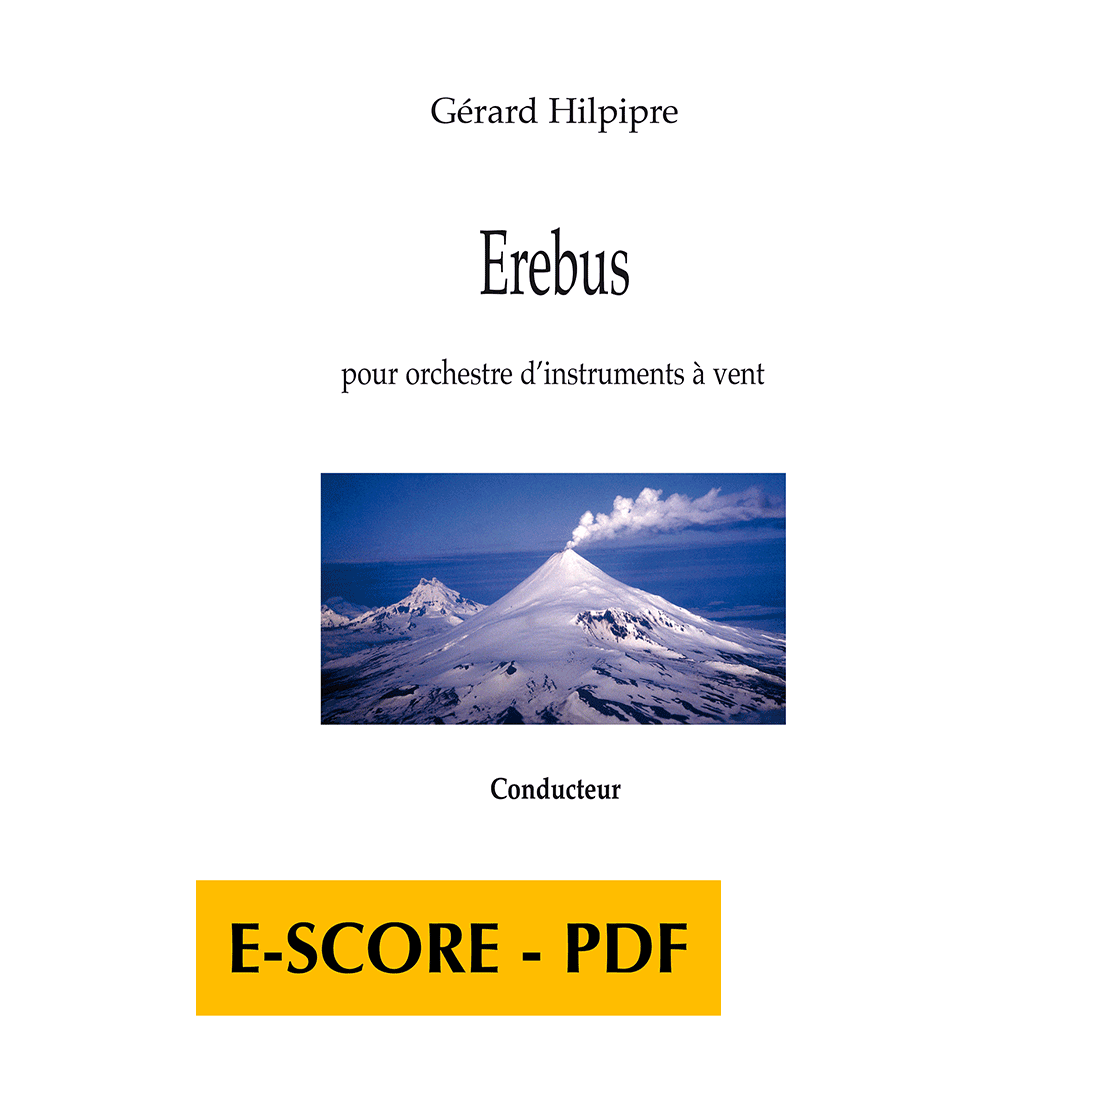 Erebus pour orchestre d’instruments à vent (CONDUCTEUR) - E-score PDF